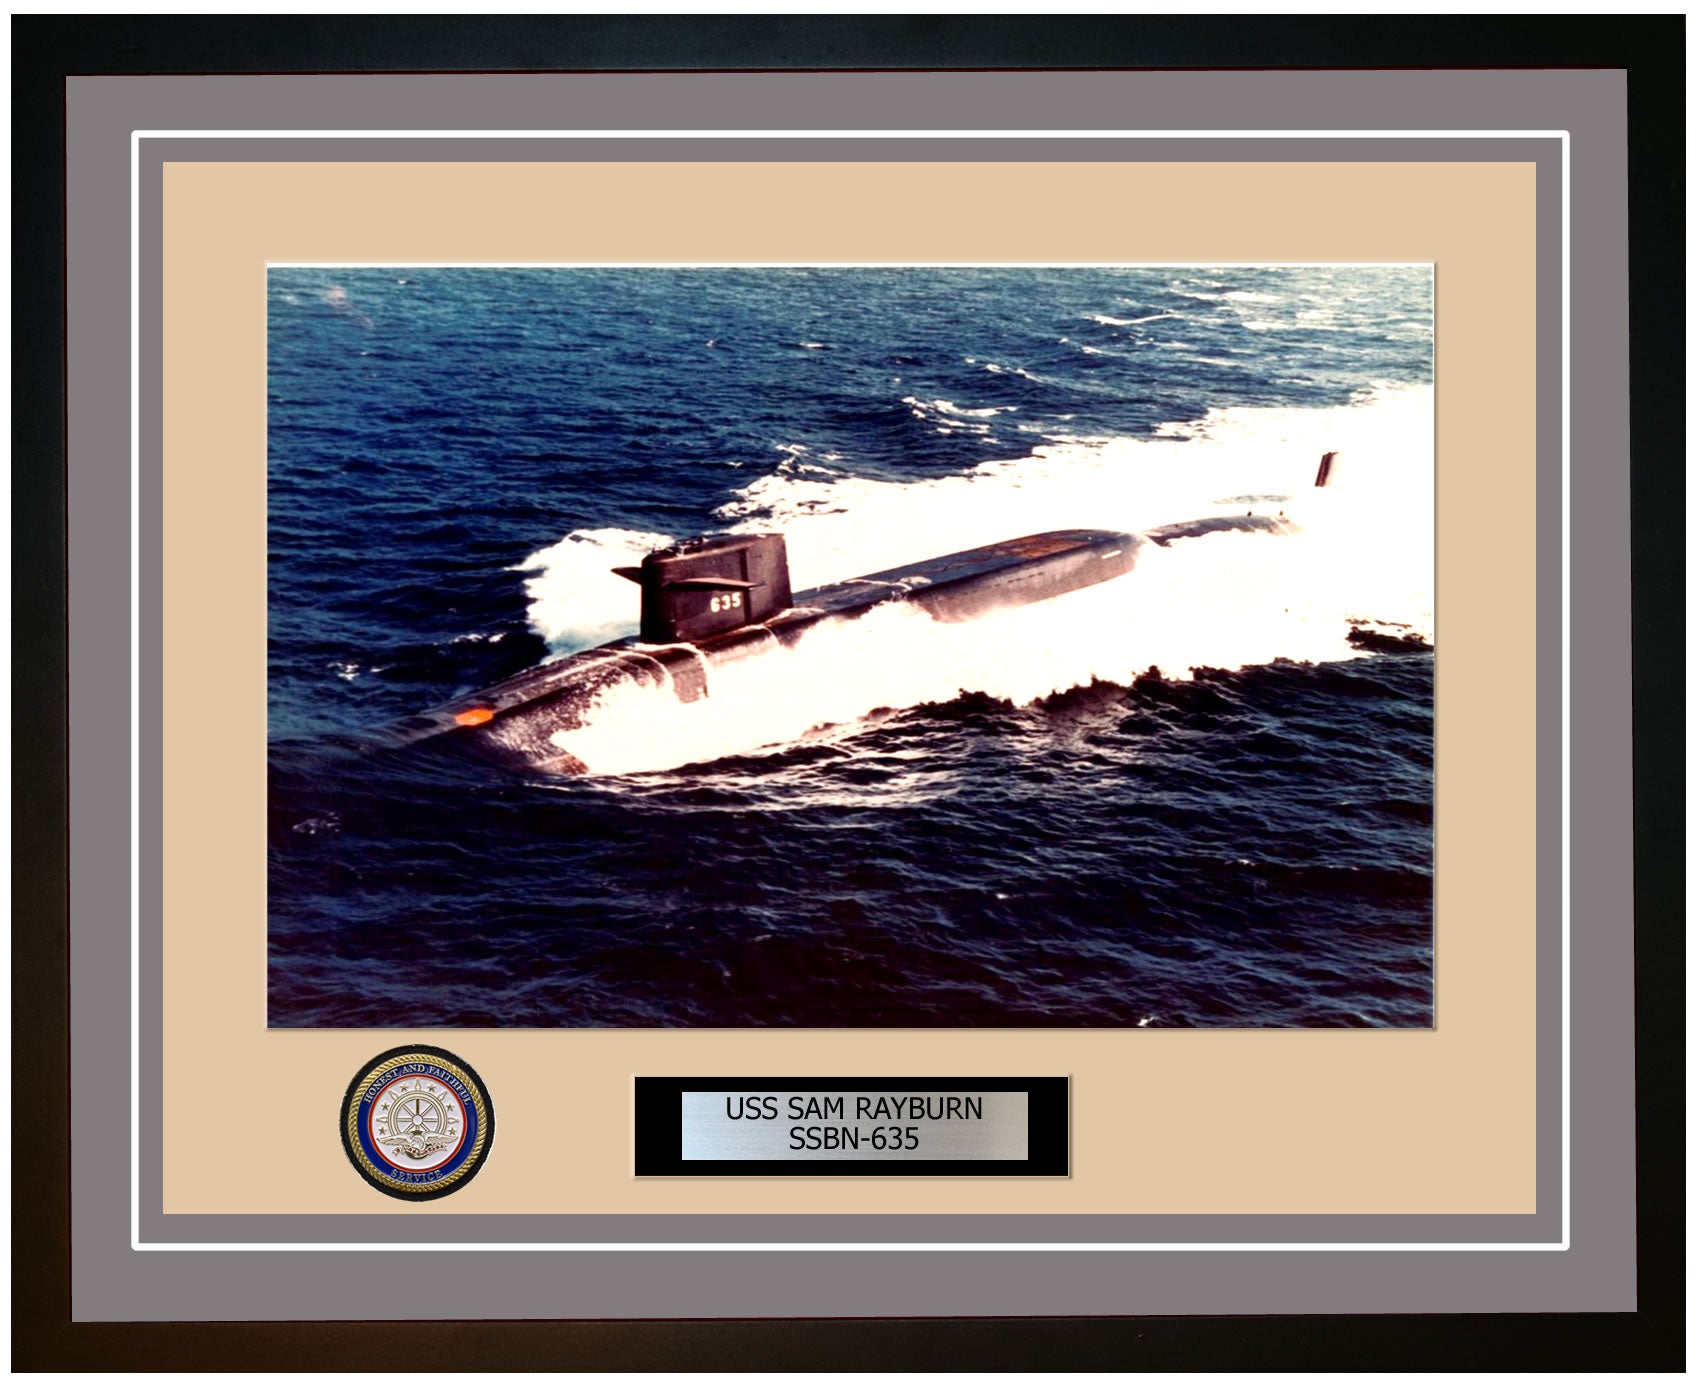 USS Sam Rayburn SSBN-635 Framed Navy Ship Photo Grey